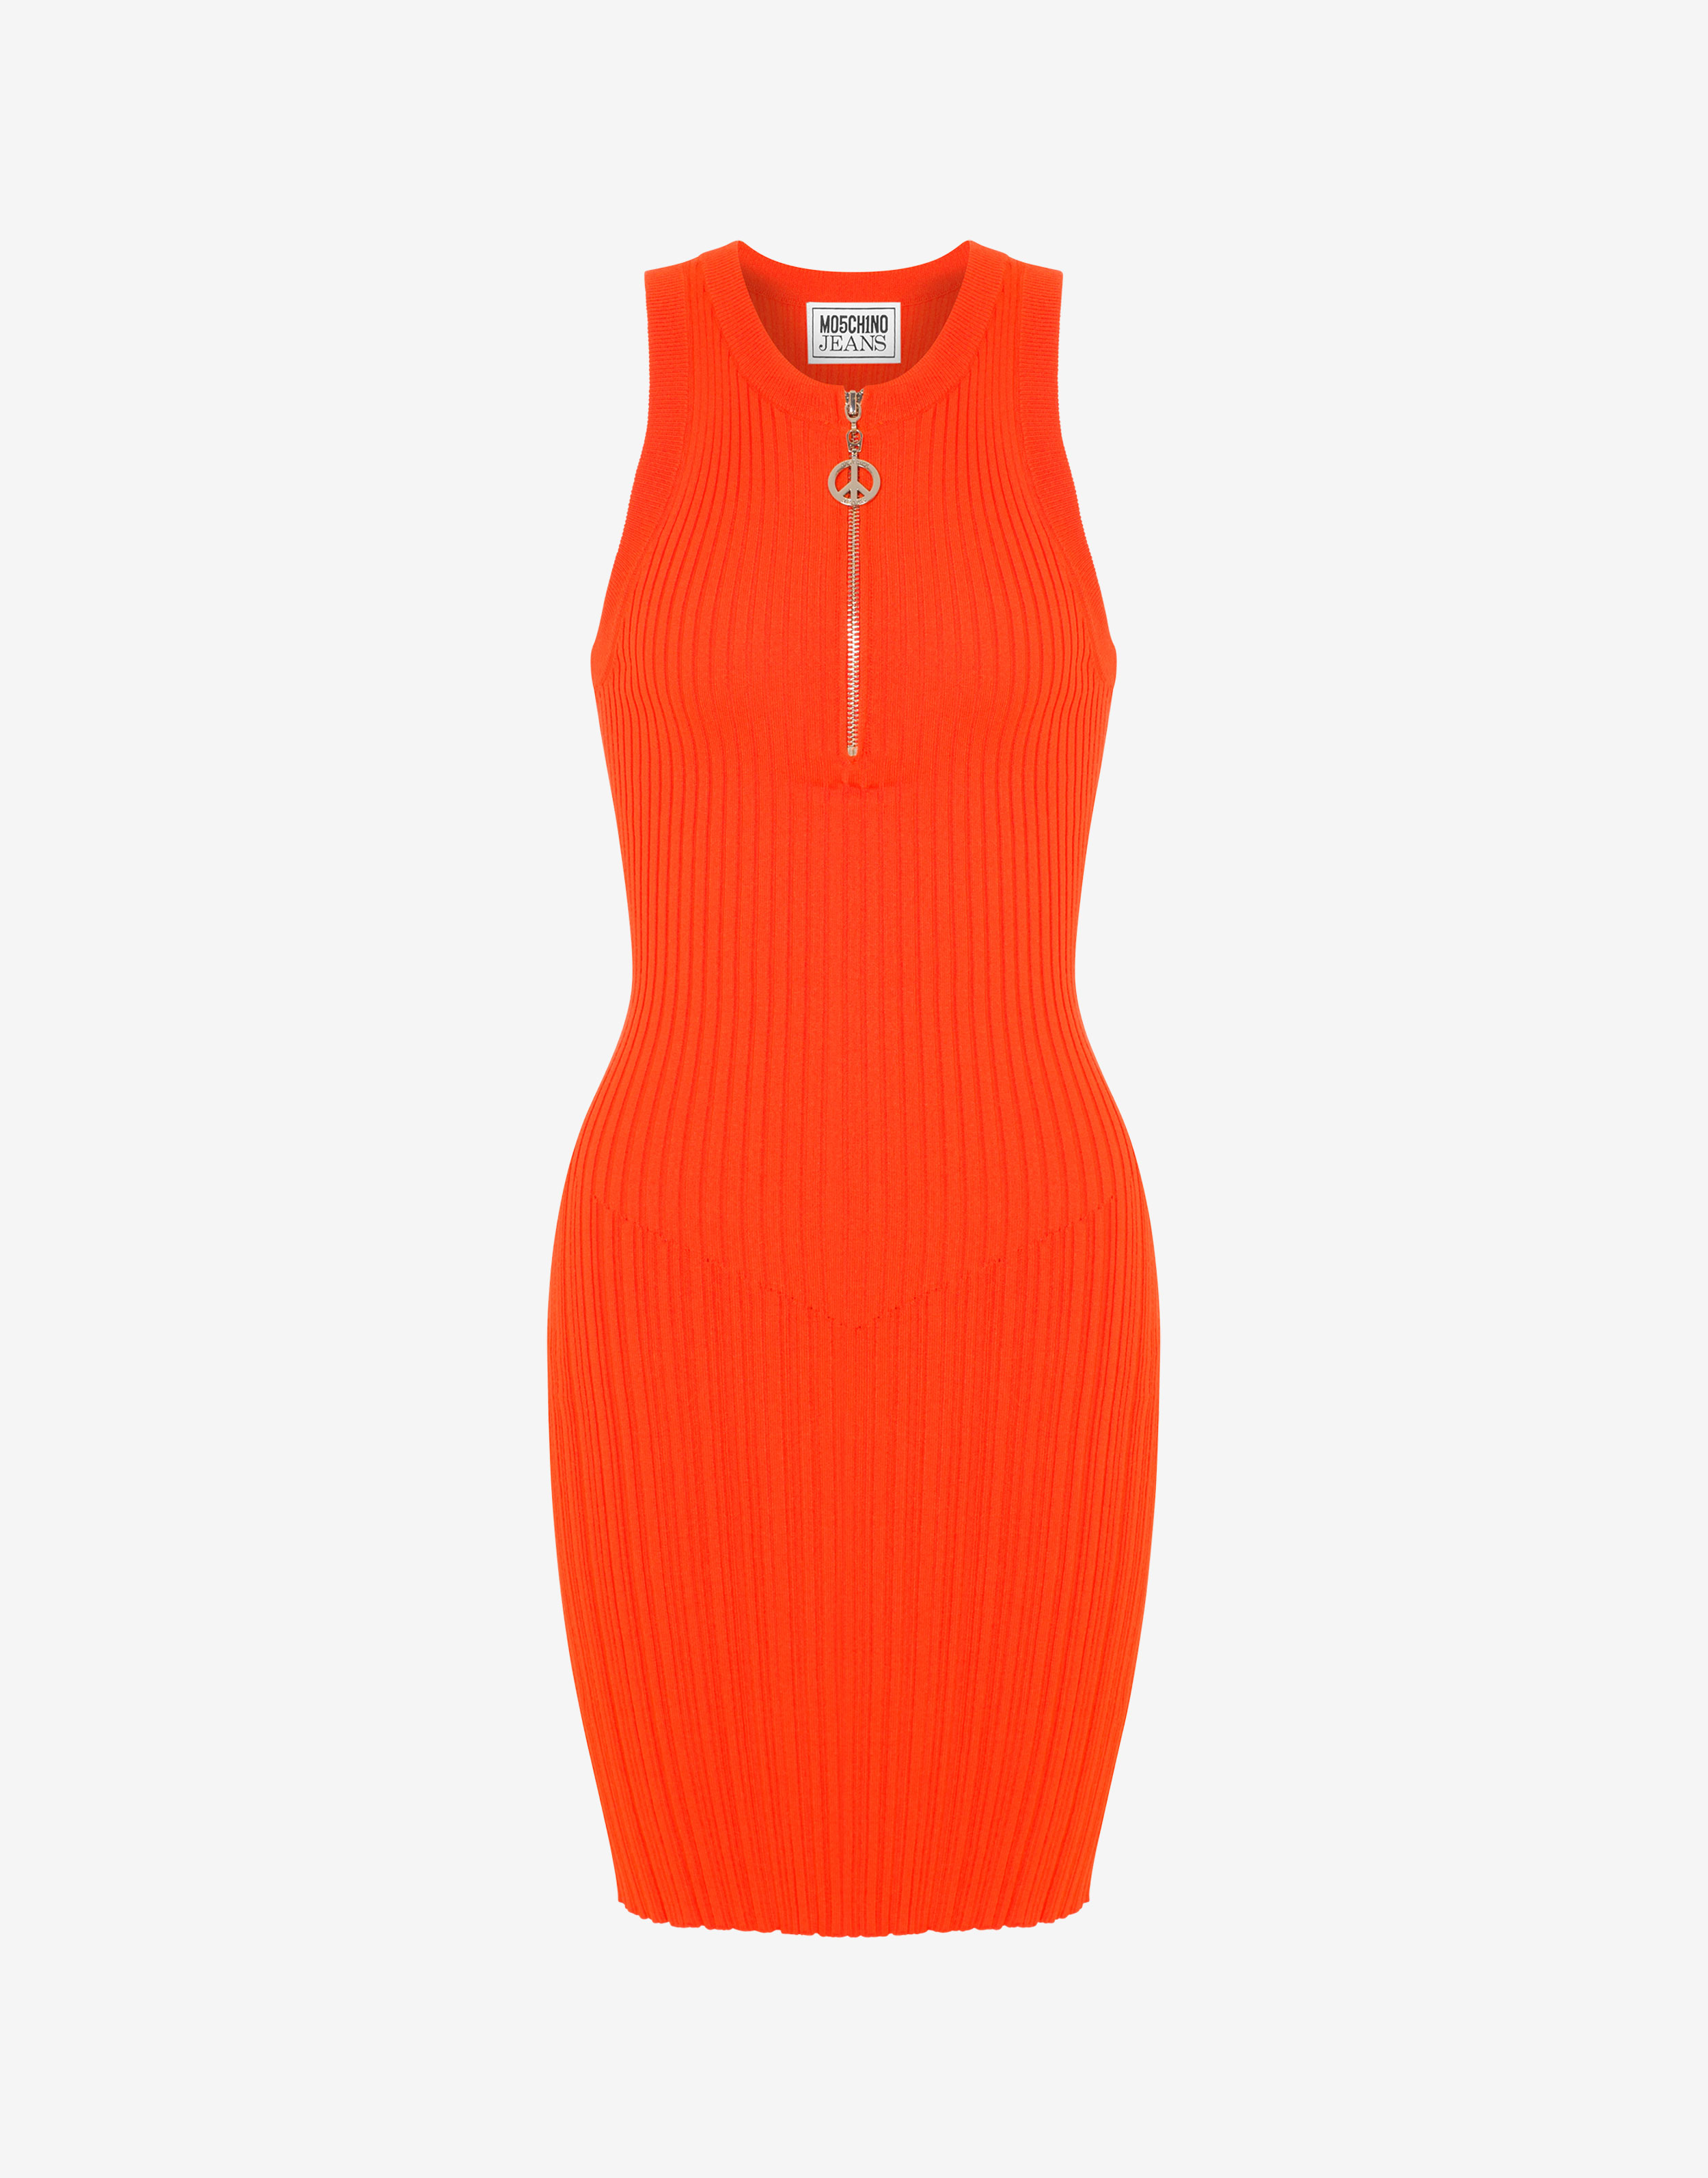 Stretch viscose dress, red orange